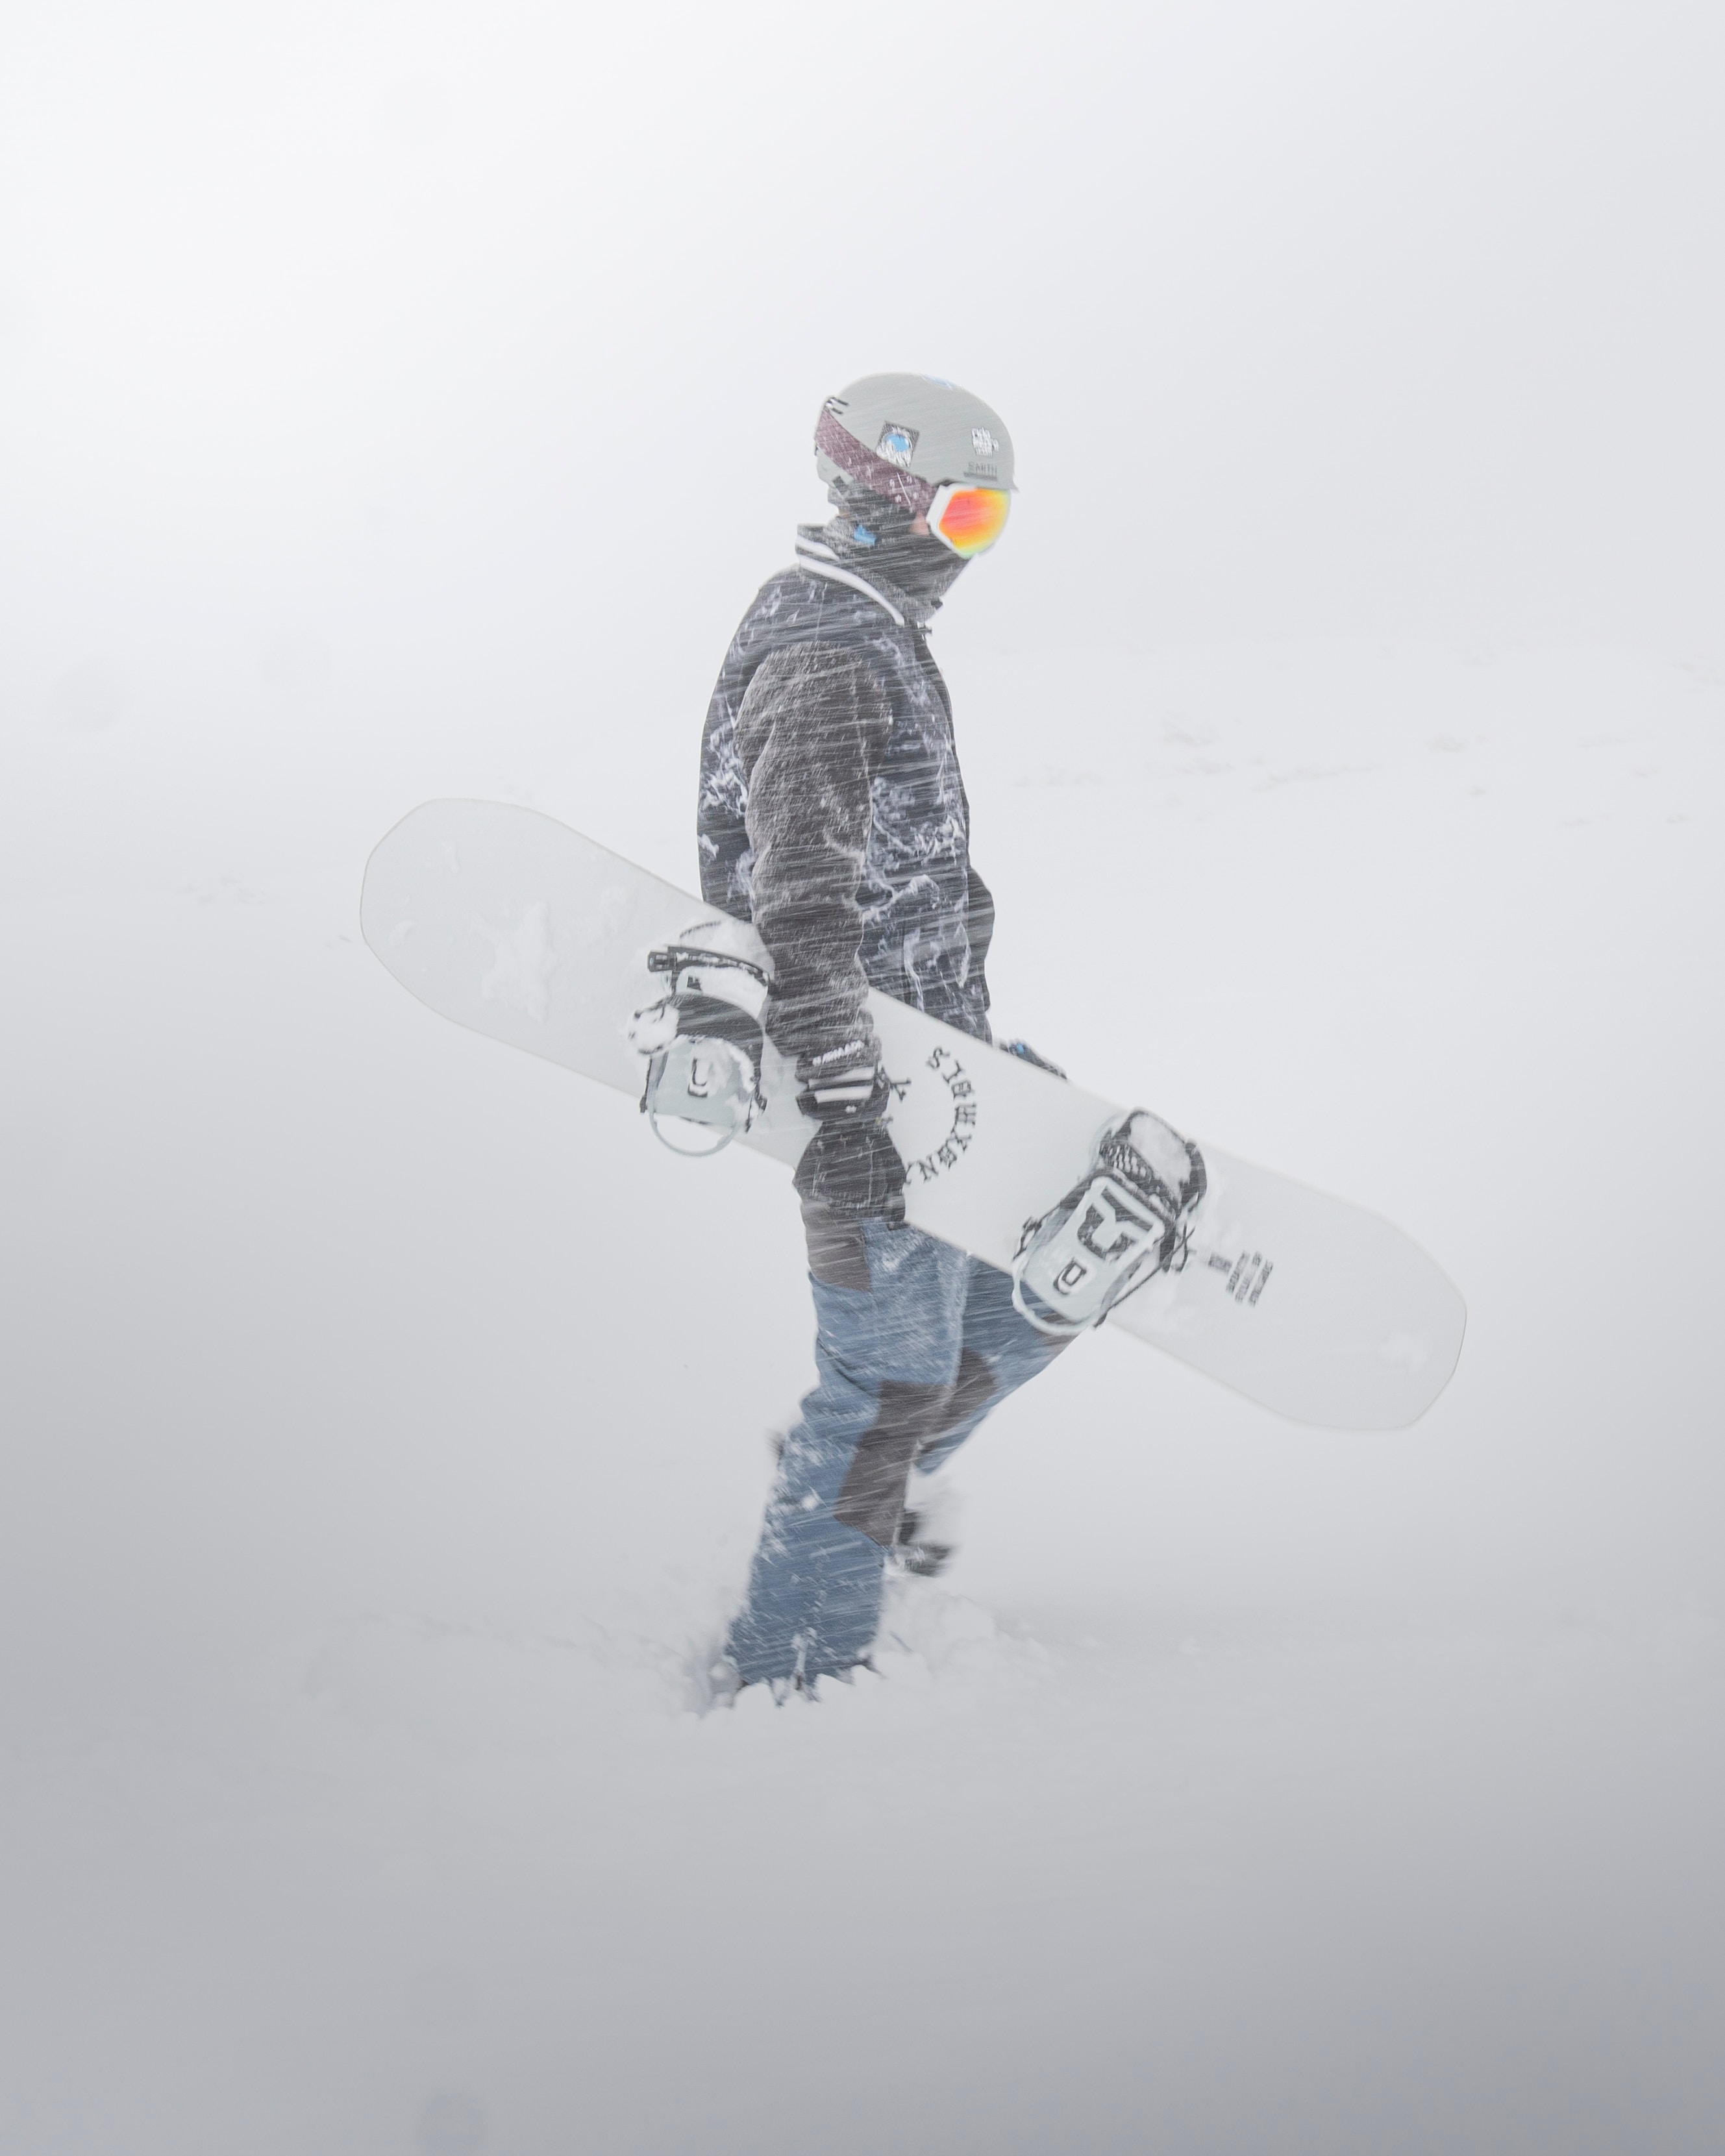 Los mejores fondos de pantalla de Snowboard para la pantalla del teléfono